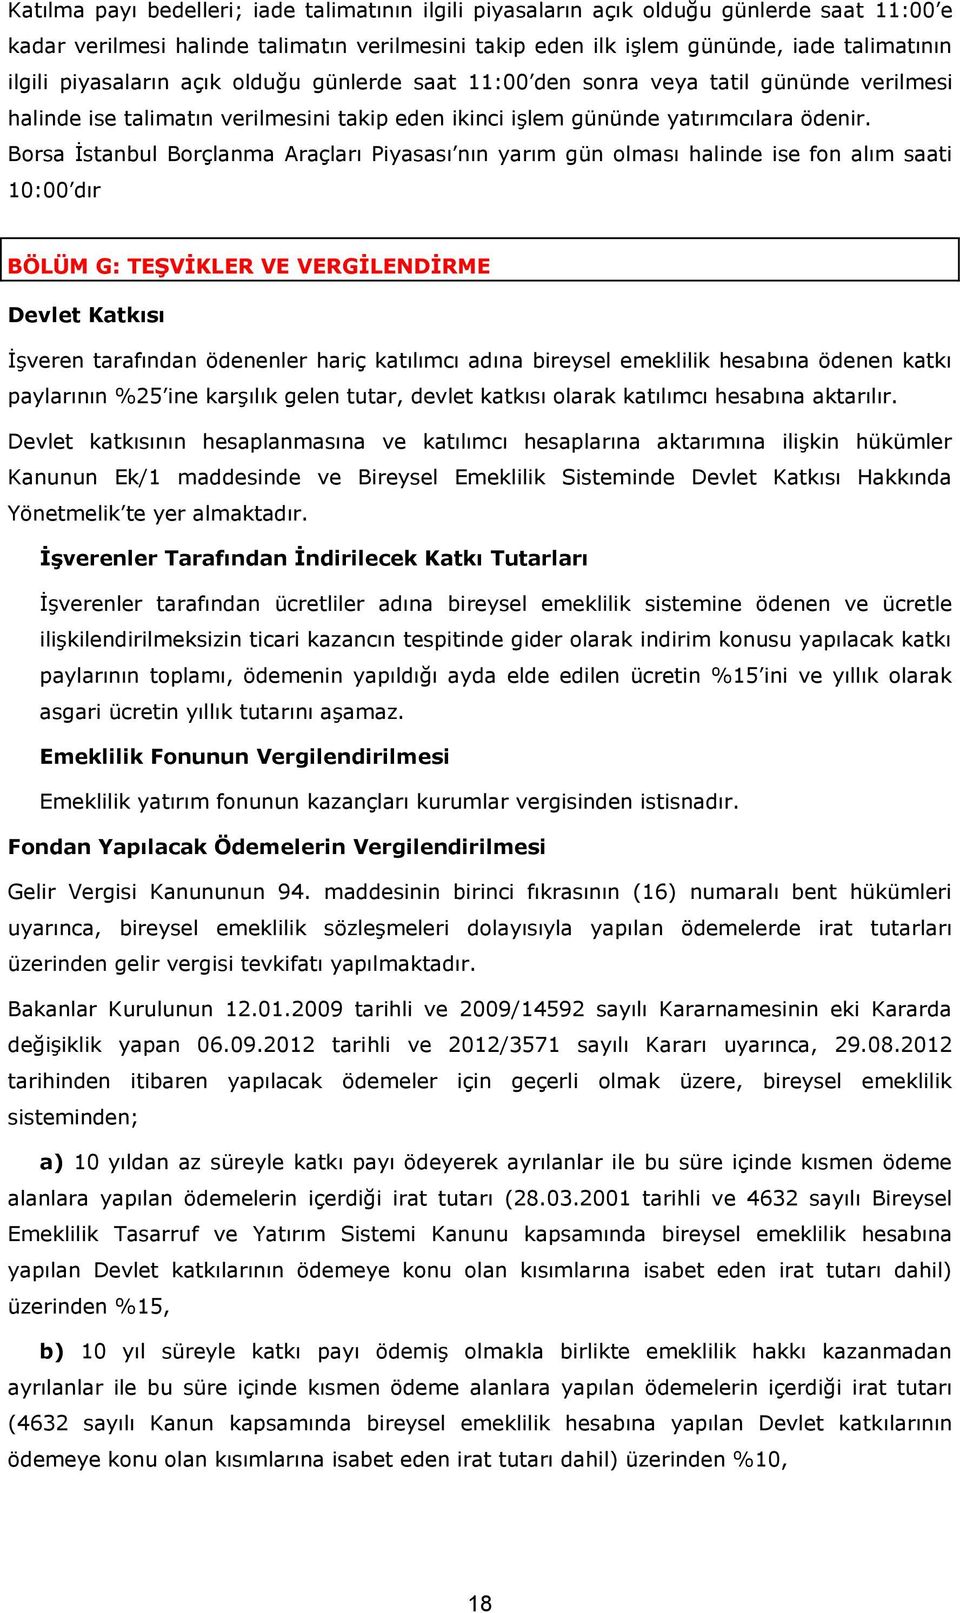 Borsa İstanbul Borçlanma Araçları Piyasası nın yarım gün olması halinde ise fon alım saati 10:00 dır BÖLÜM G: TEŞVİKLER VE VERGİLENDİRME Devlet Katkısı İşveren tarafından ödenenler hariç katılımcı